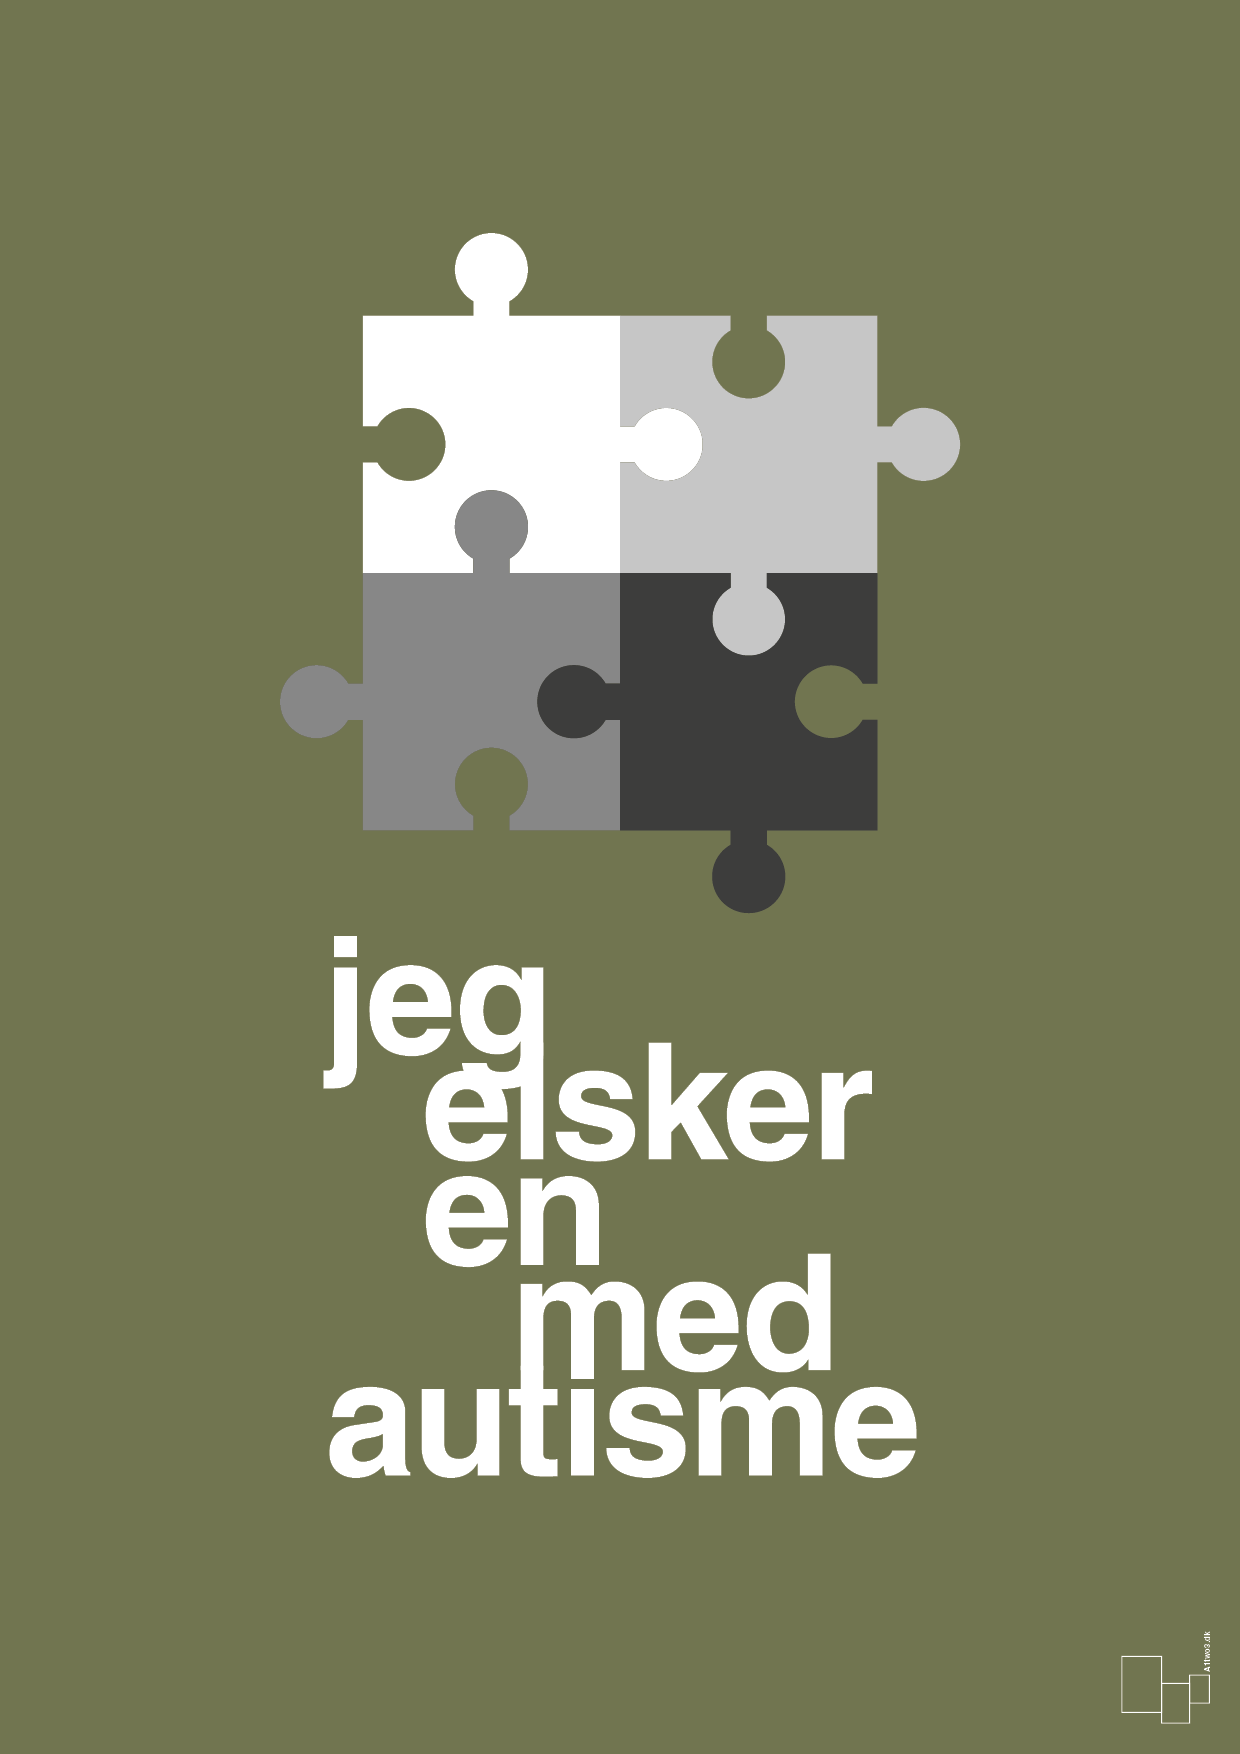 jeg elsker en med autisme - Plakat med Samfund i Secret Meadow